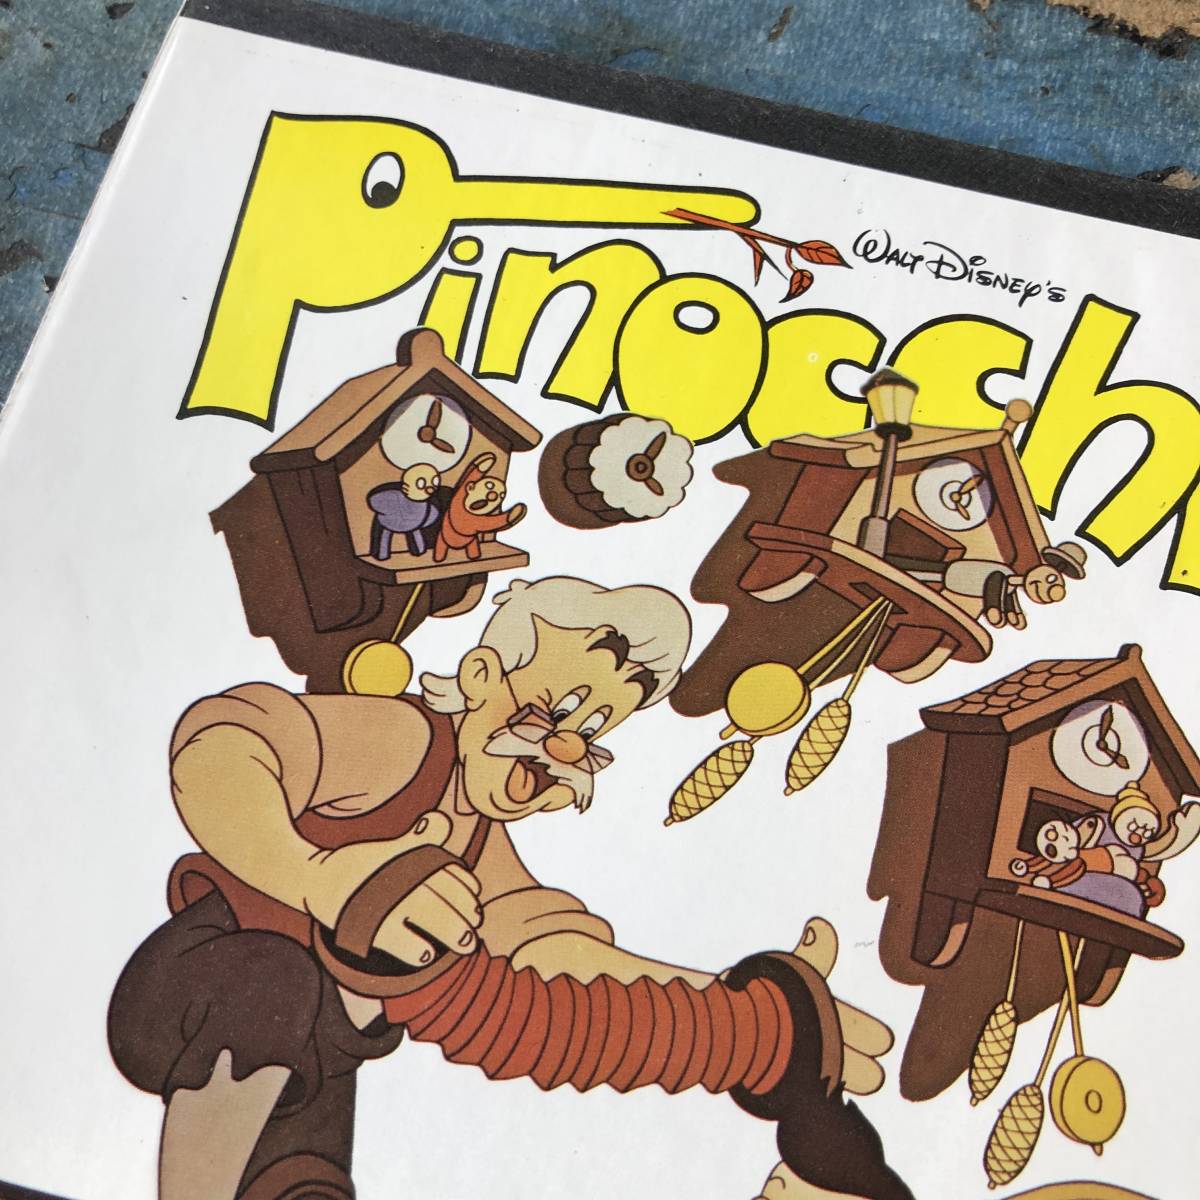  быстрое решение 80s Vintage Disney school планшет Note Pinocchio Kids America смешанные товары 